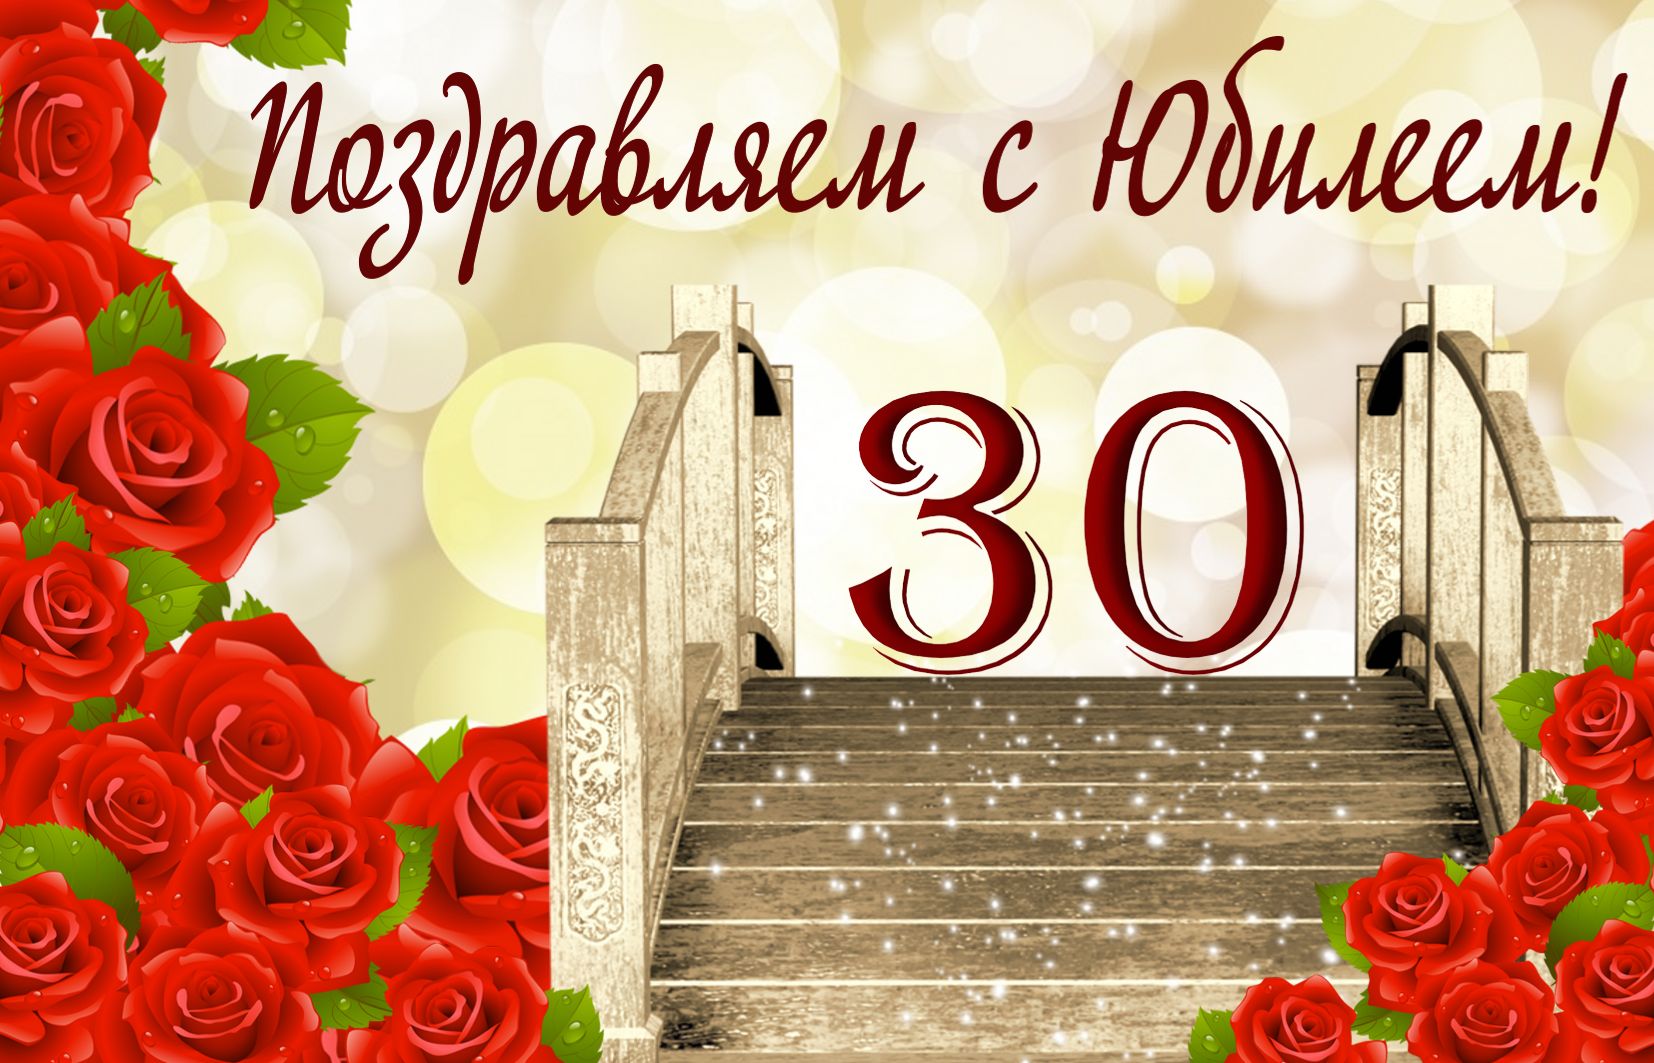 Открытка на юбилей 30 лет - лестница в будущее в оформлении из роз